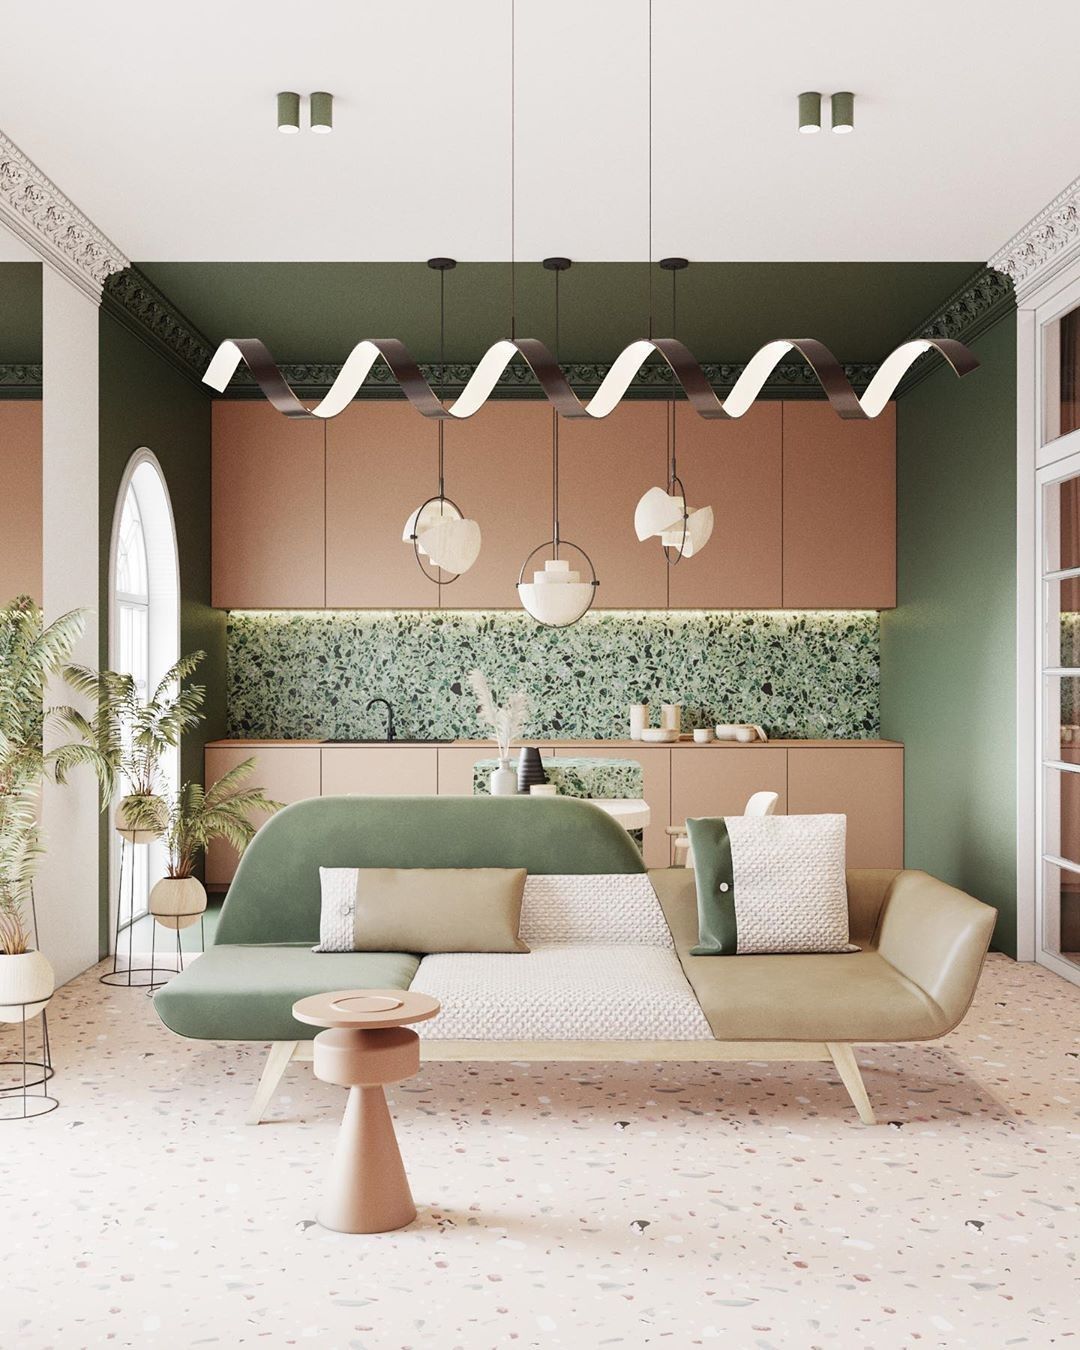 Décor do dia: cozinha com terrazzo verde e armário rosa claro – Casa Vogue | Décor do dia